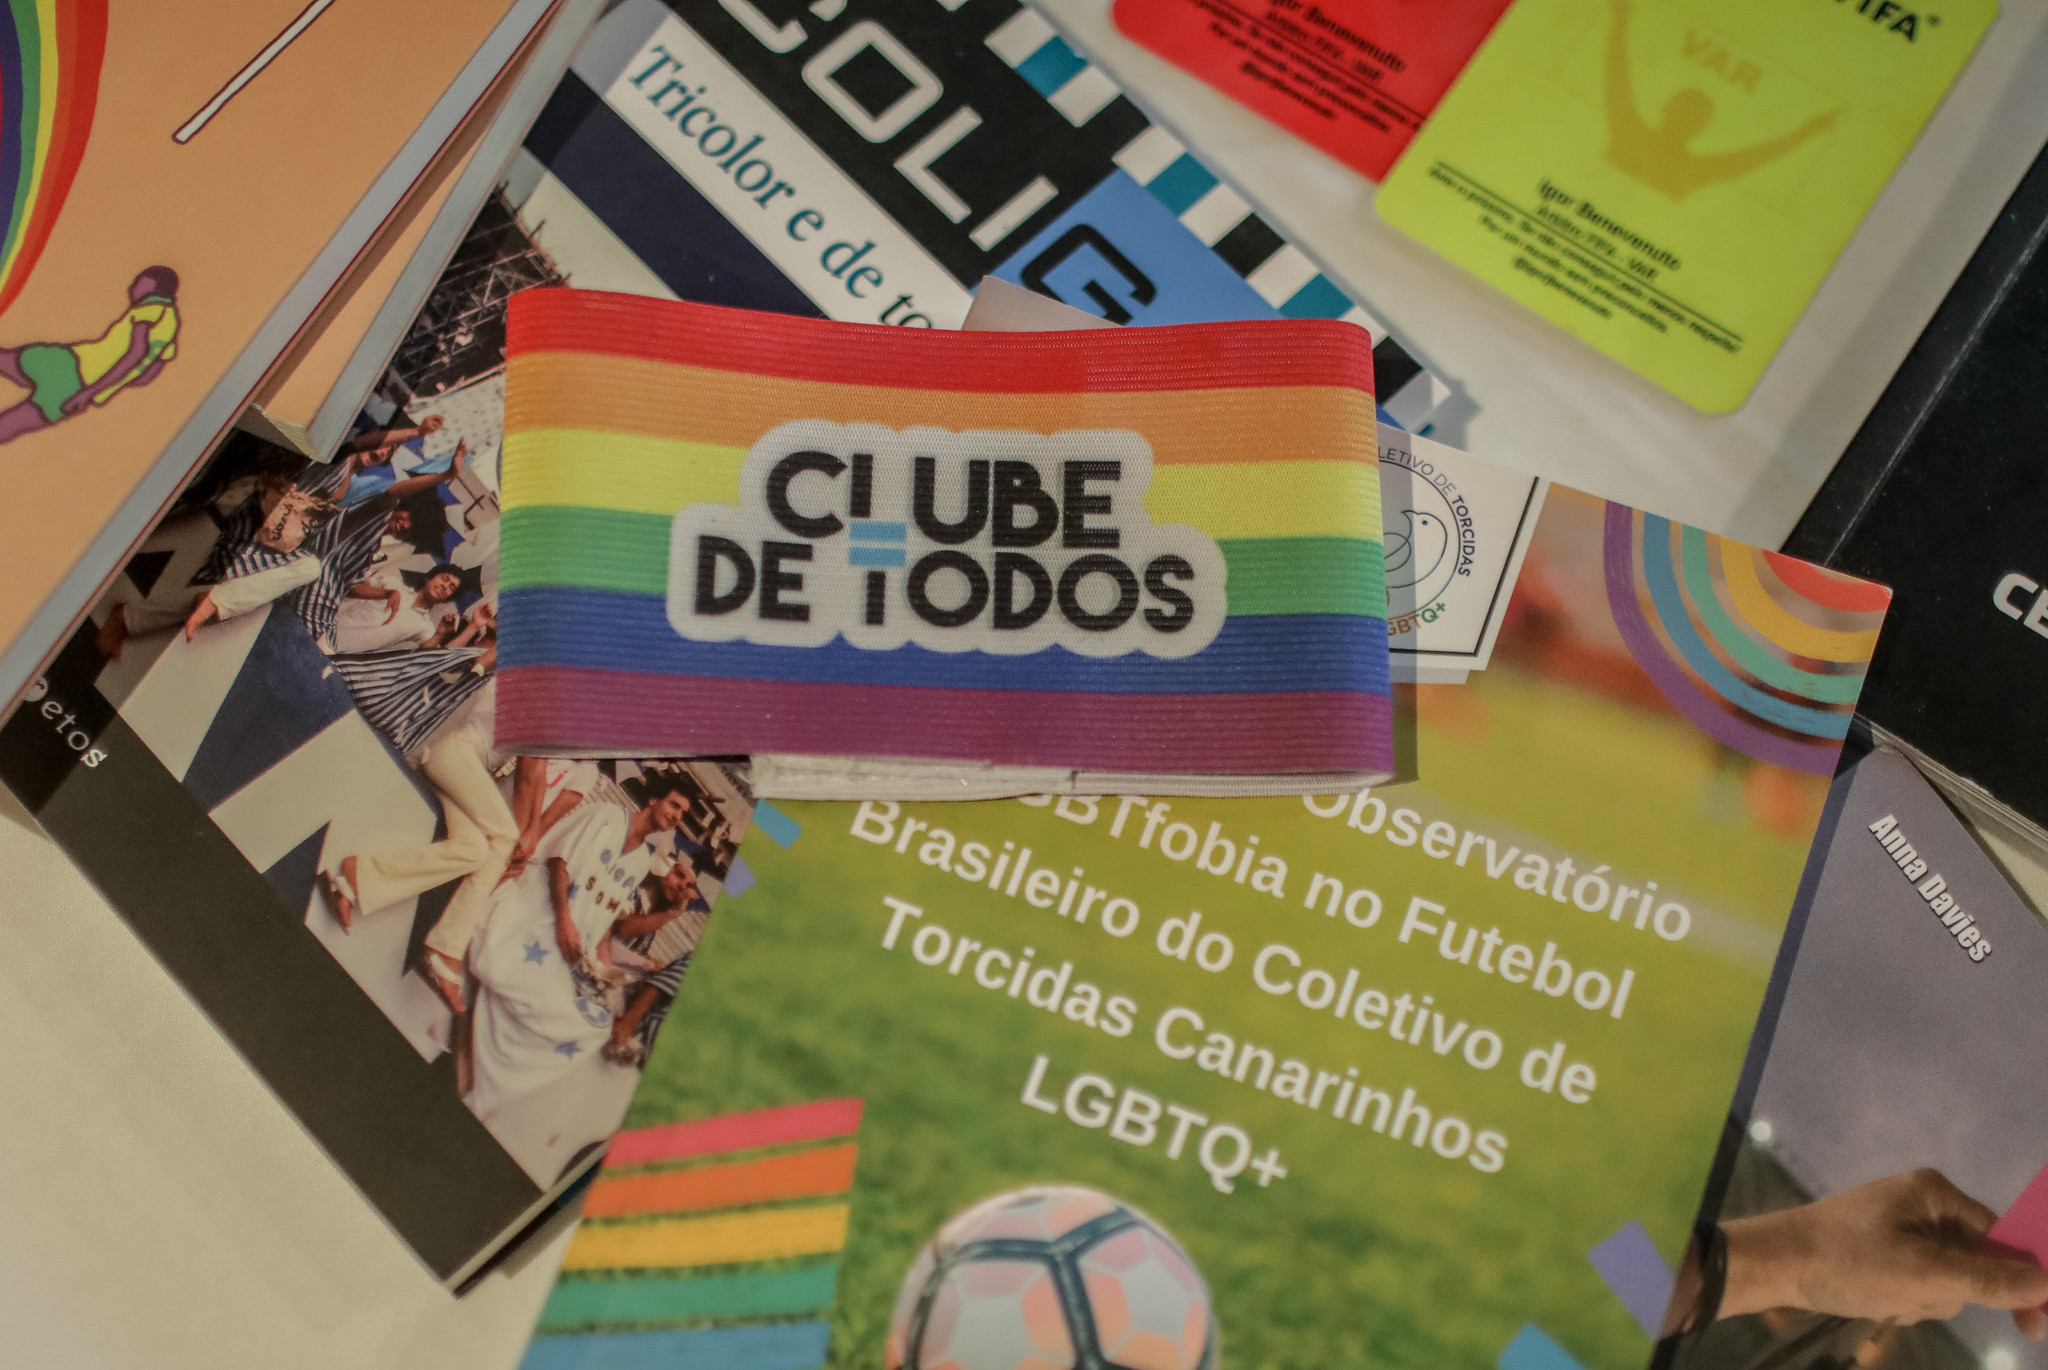 Coletivo de Torcidas lança curso de Letramento LGBTQ+ para inclusão no esporte